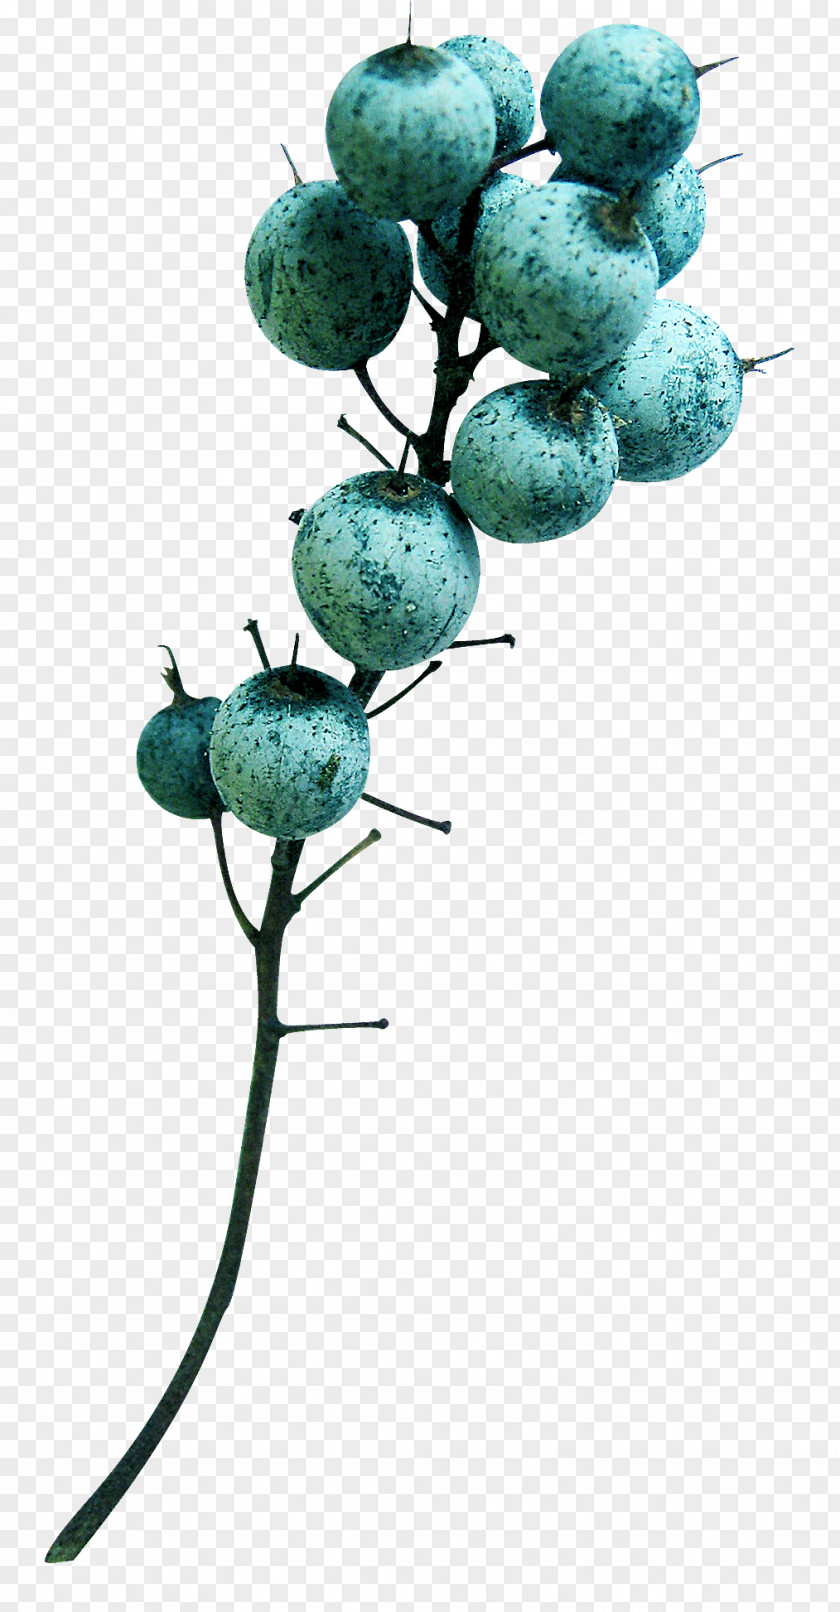 Turquoise Fruit Branching PNG